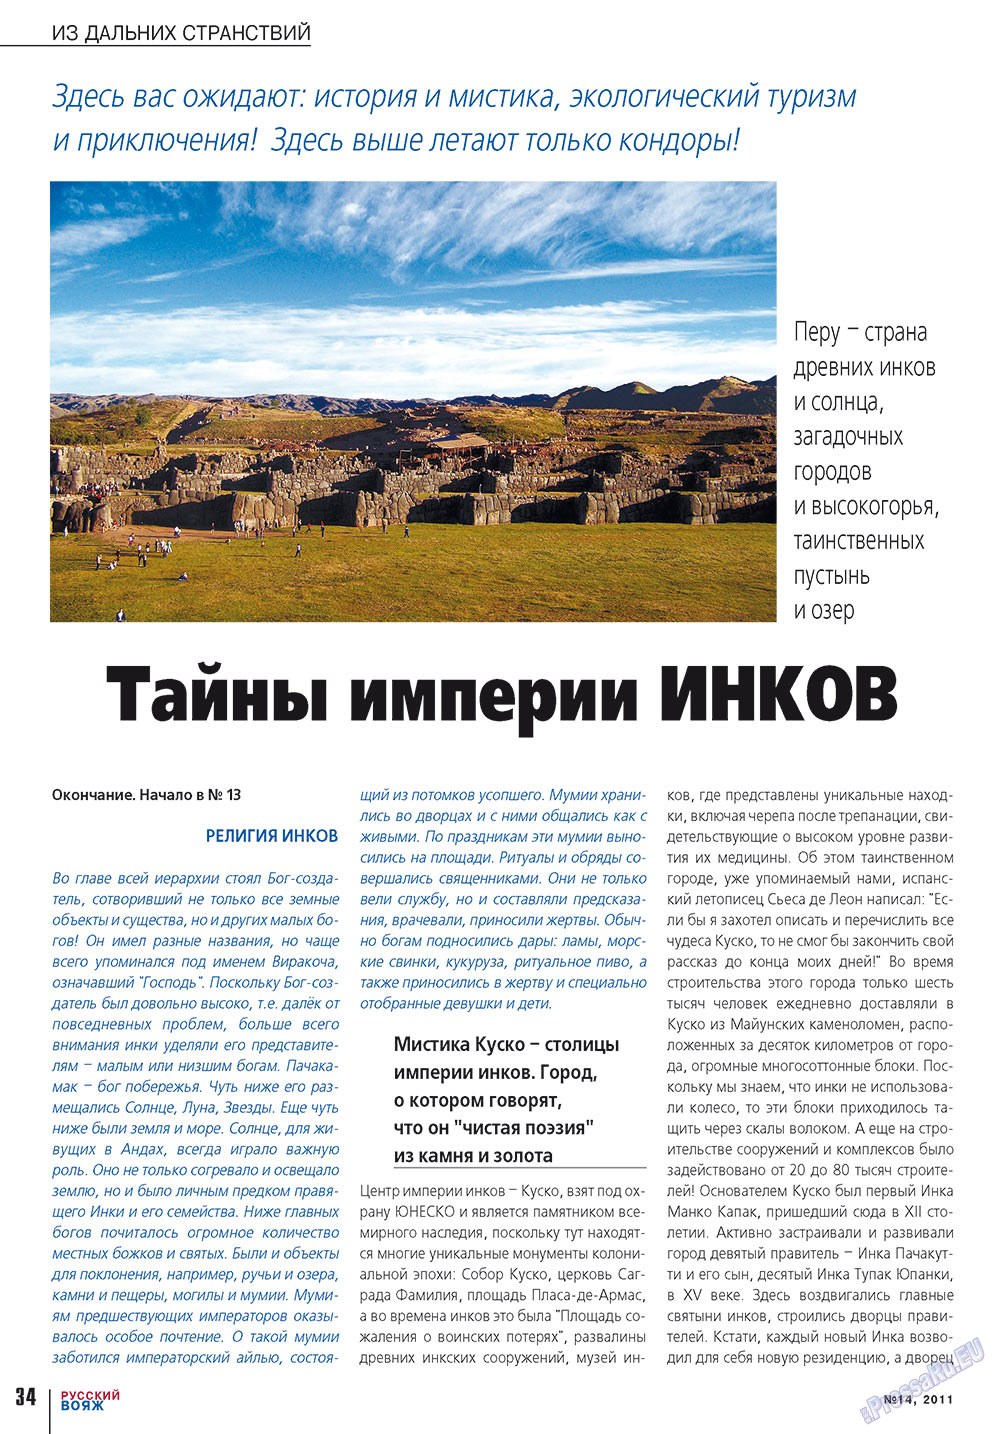 Русский вояж (журнал). 2011 год, номер 14, стр. 34